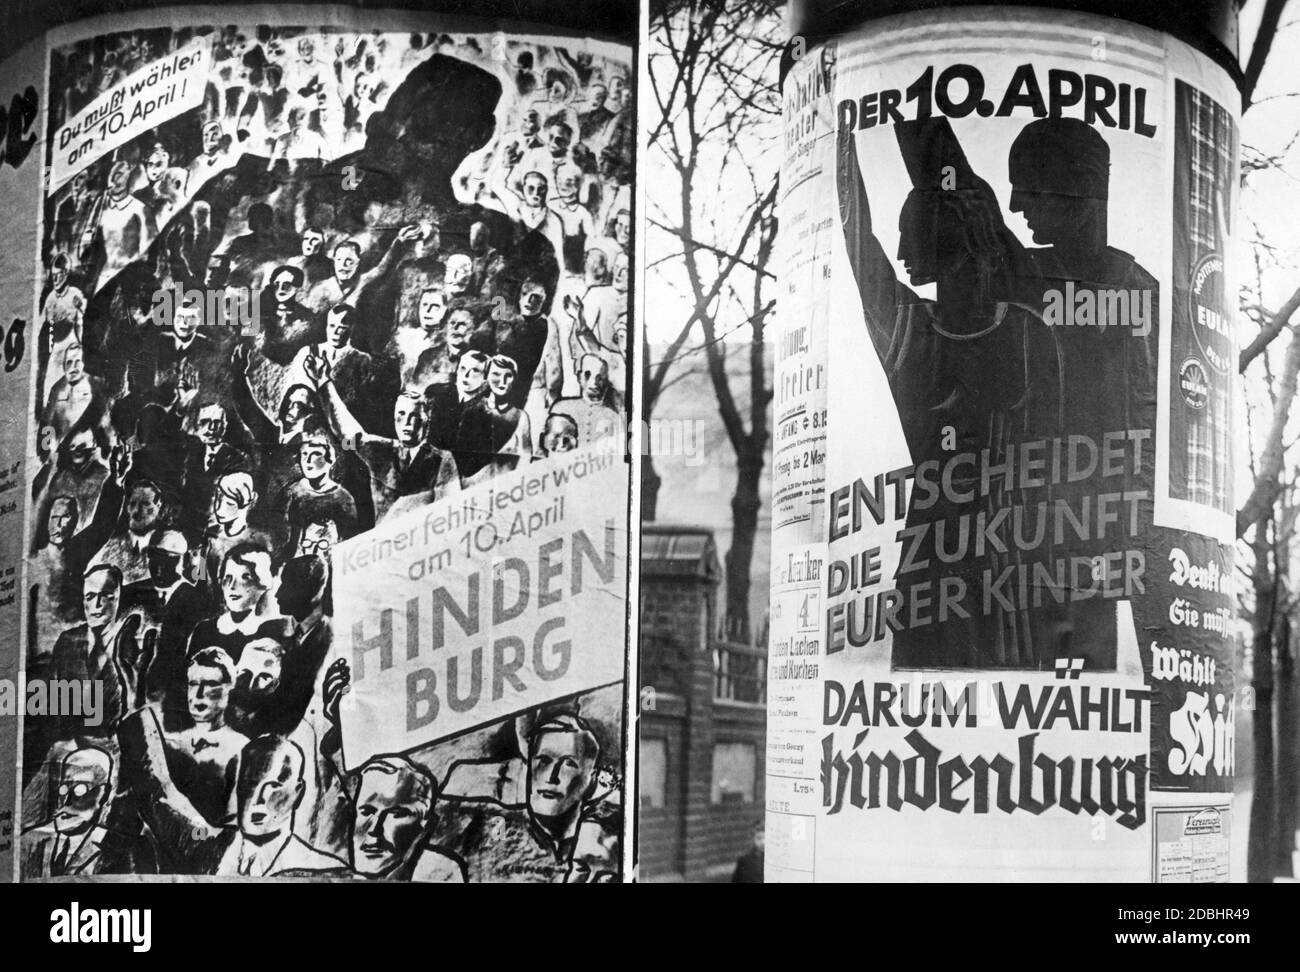 Manifesti elettorali del Comitato Hindenburg con l'invito a eleggere Hindenburg come Presidente del Reich il 10 aprile. Foto Stock